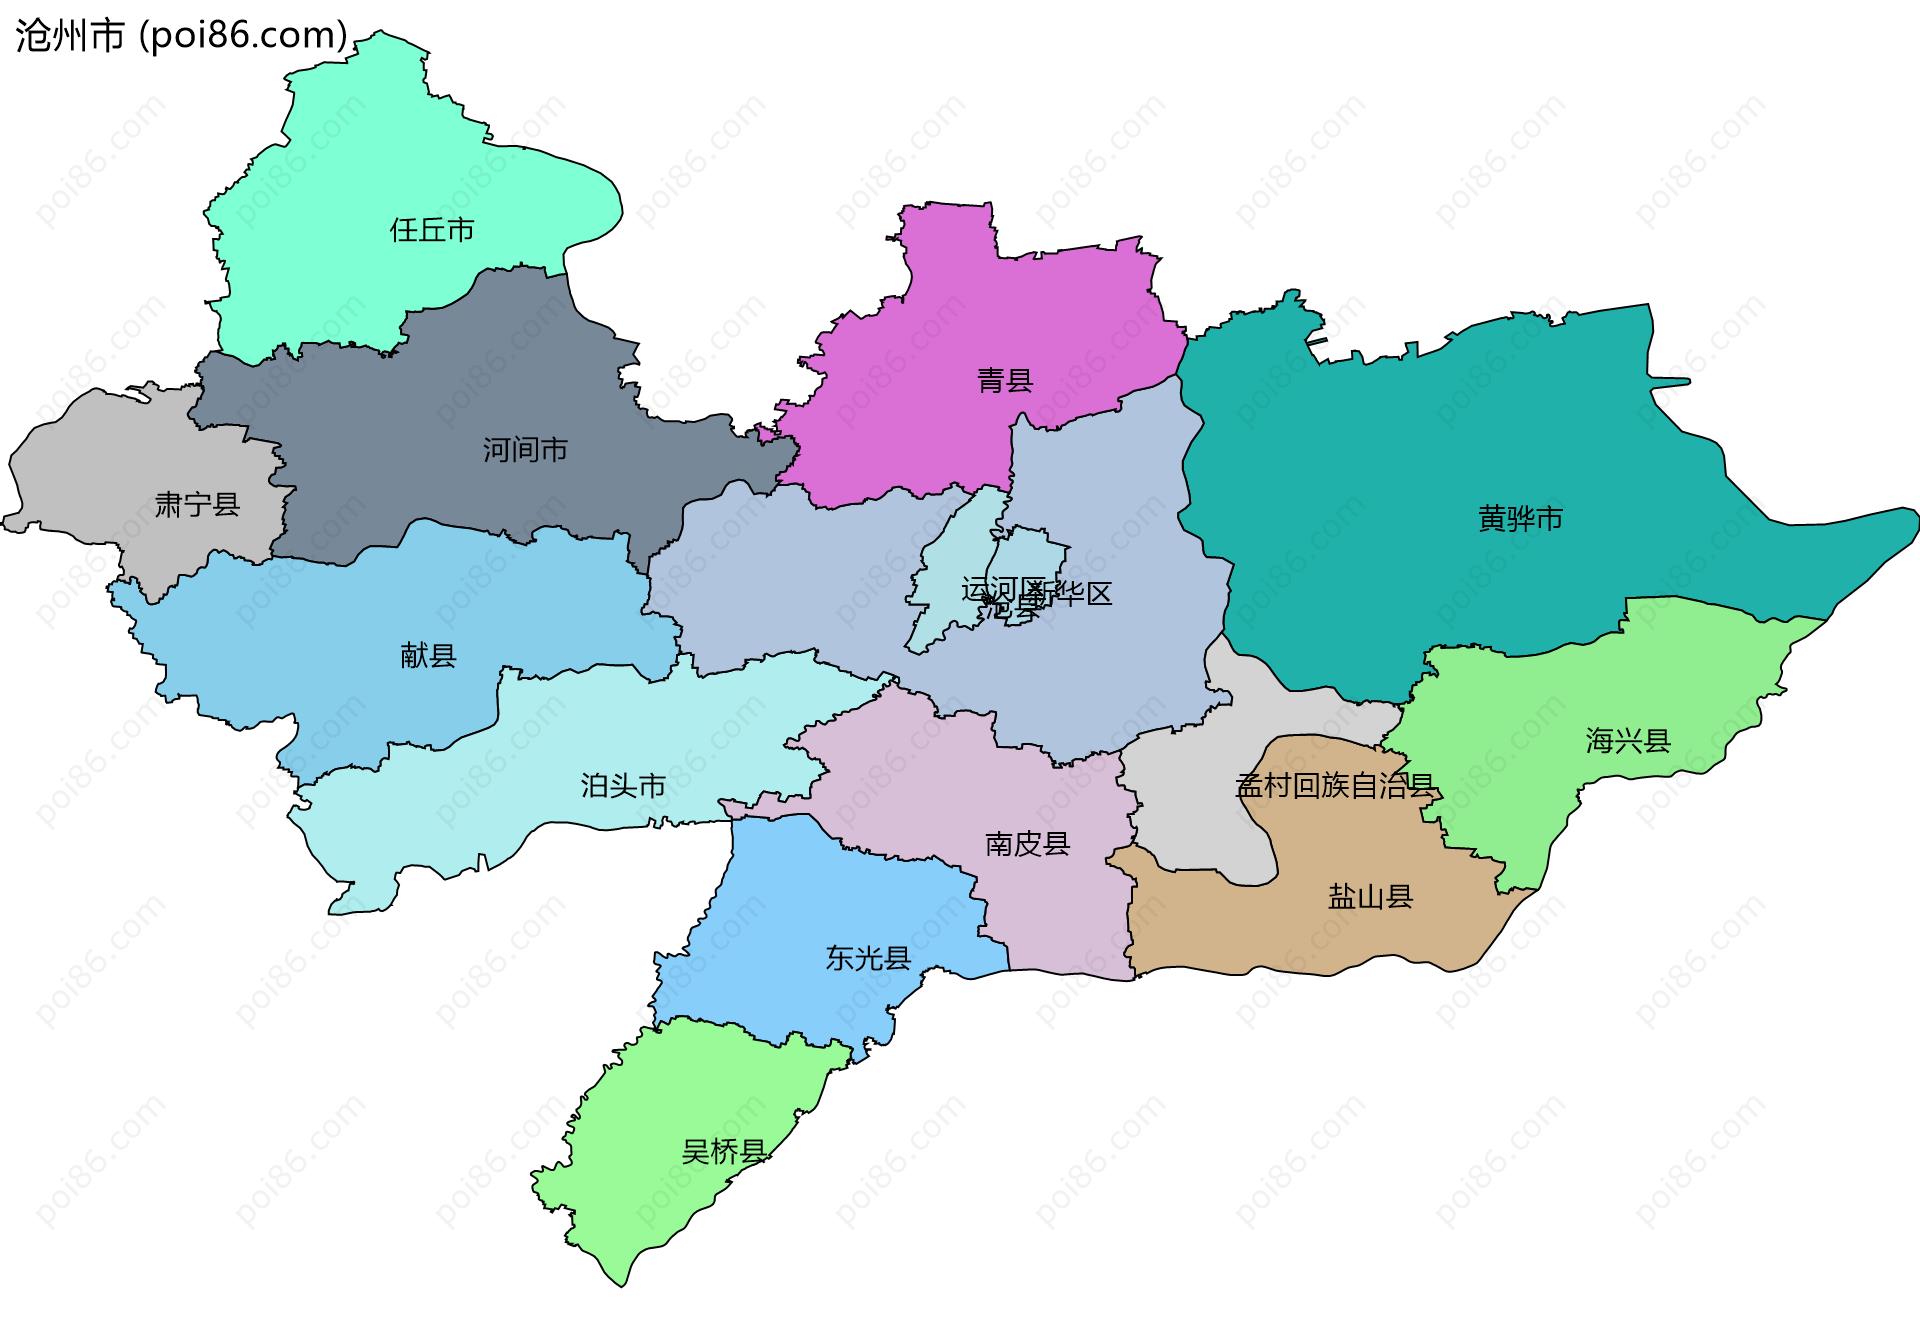 沧州市边界地图